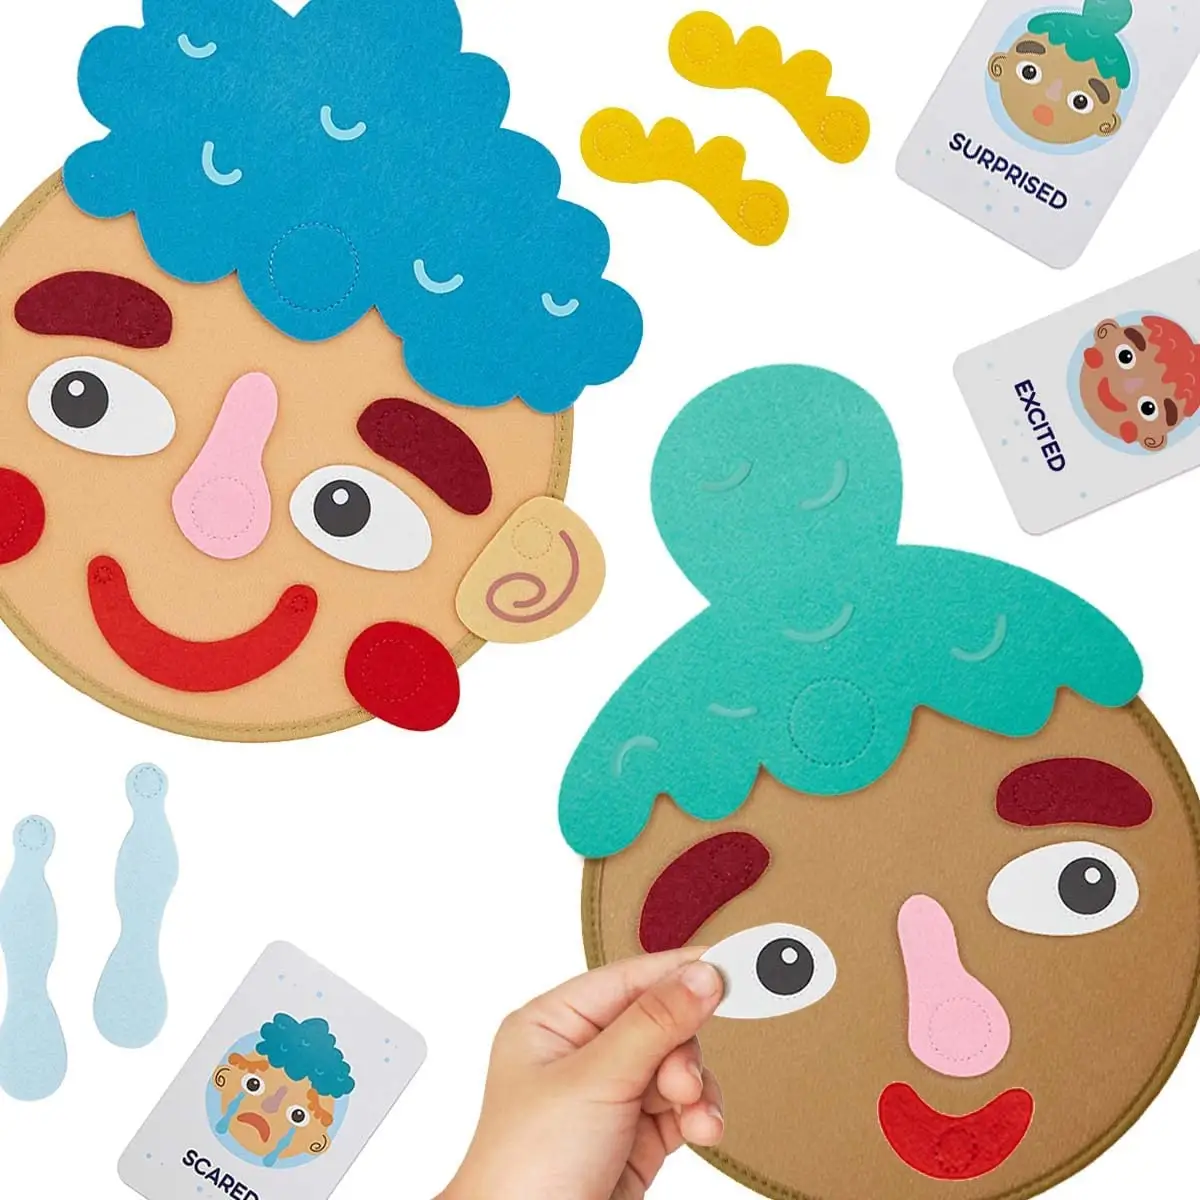 Crea volti e fornisci sentimenti-9 schede Flash di emozione-attività di apprendimento prescolare giocattolo gioco emotivo sociale per bambini